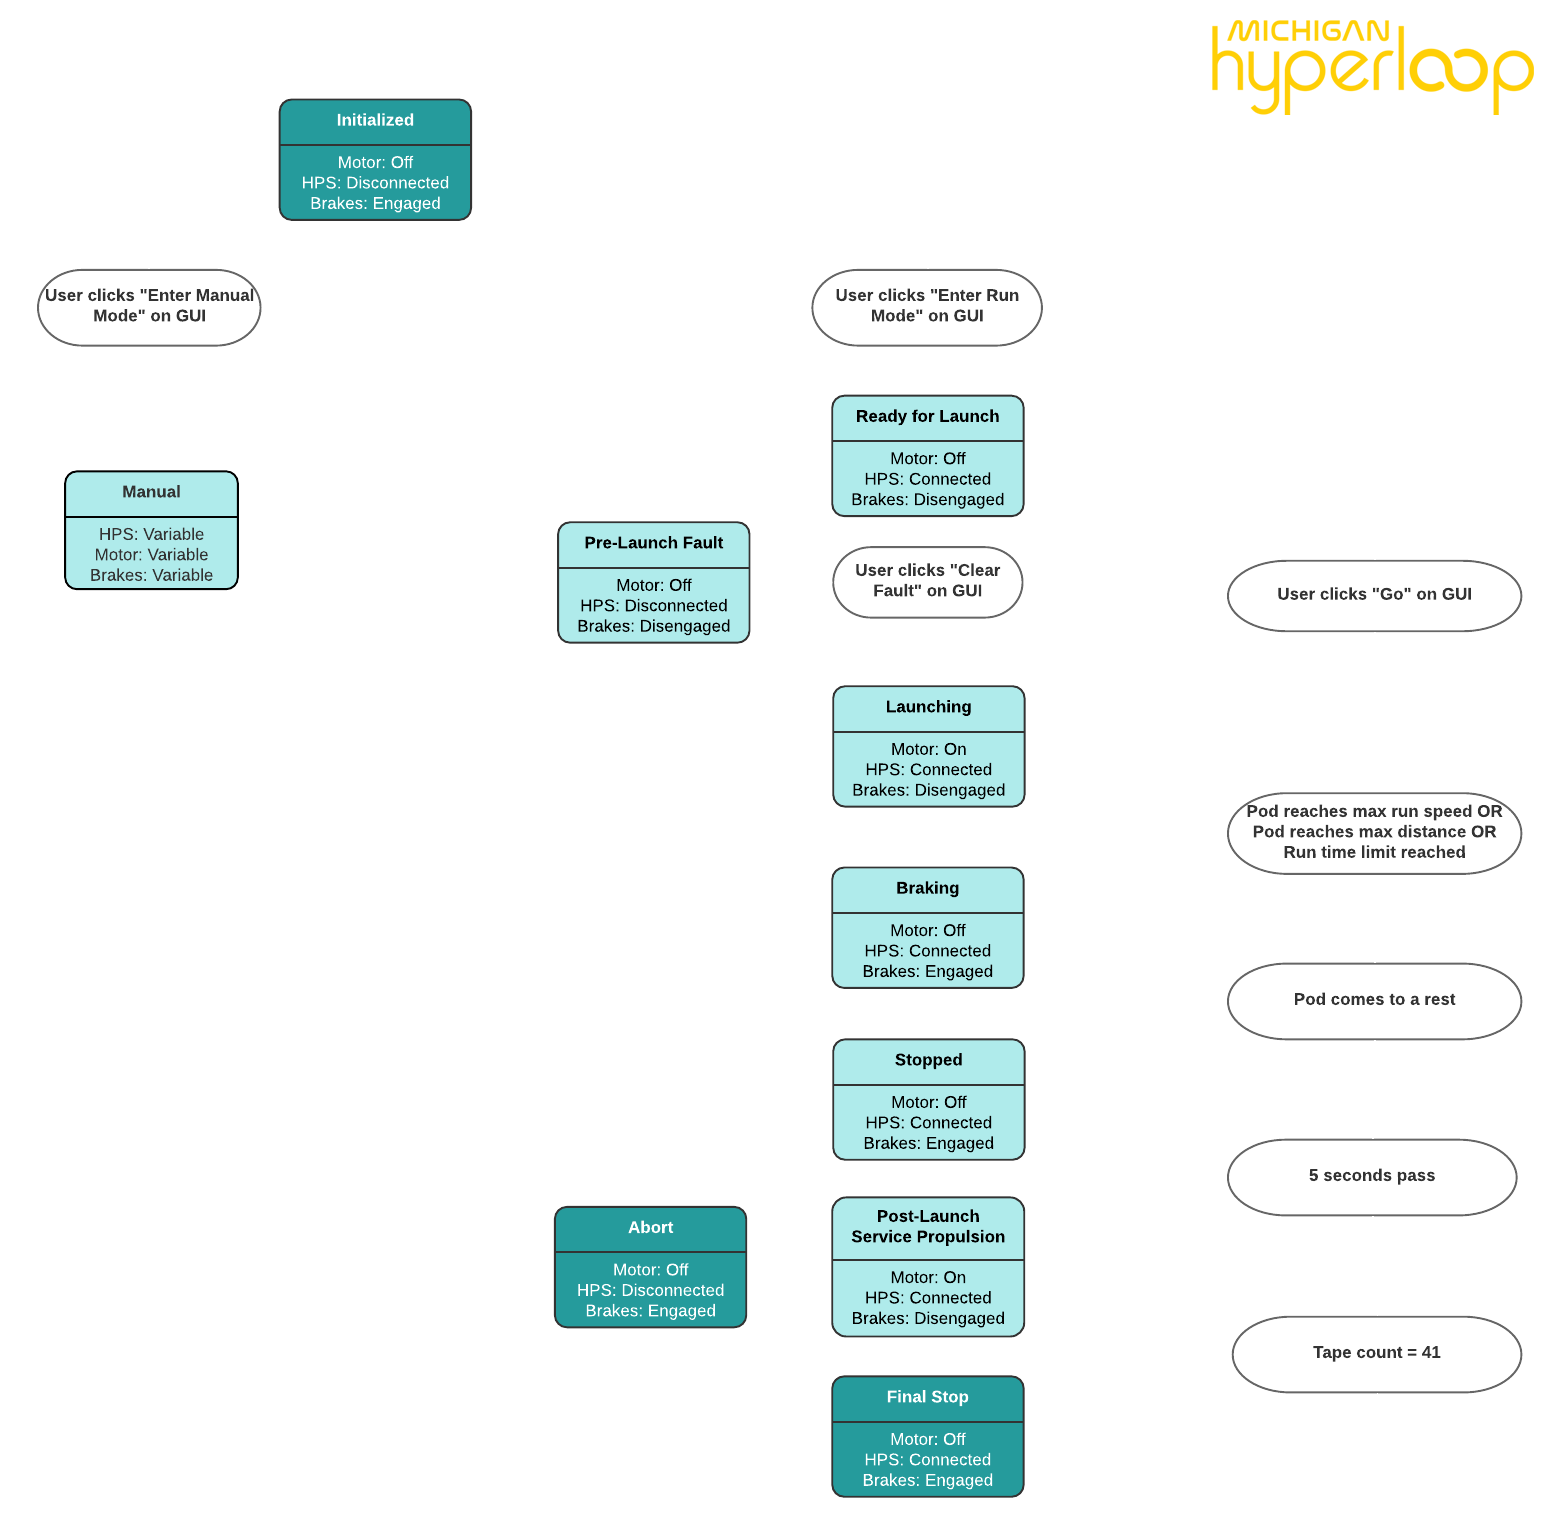 hyperloop software state diagram 